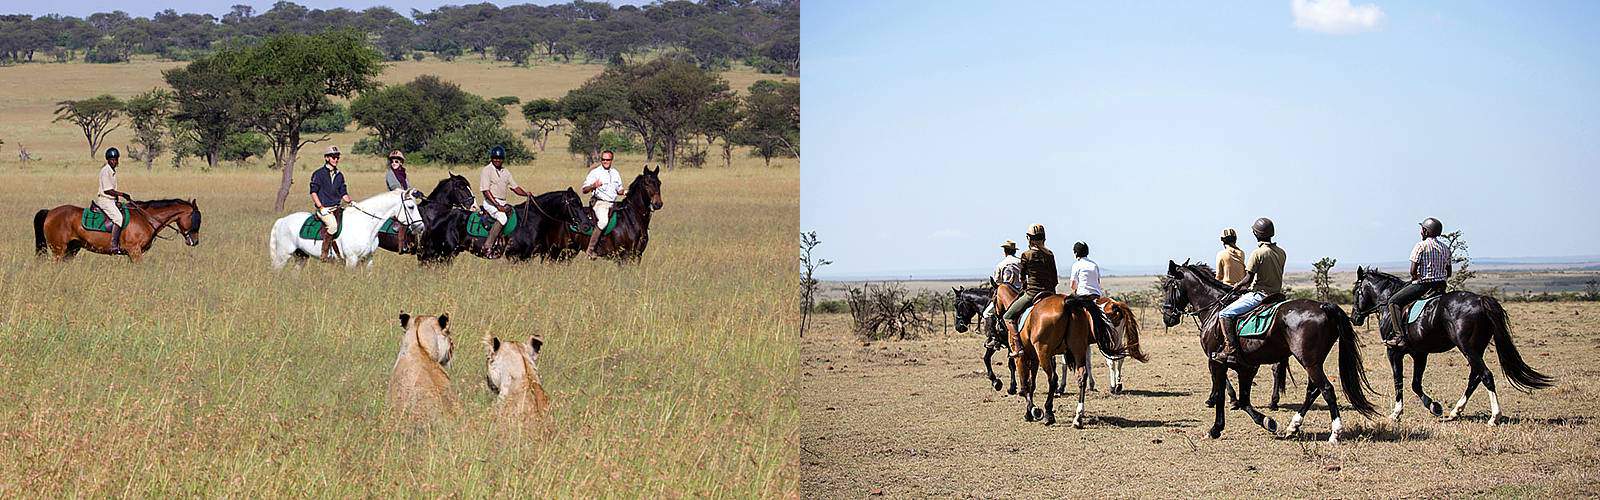 Maasai Mara Horse-Riding Safari